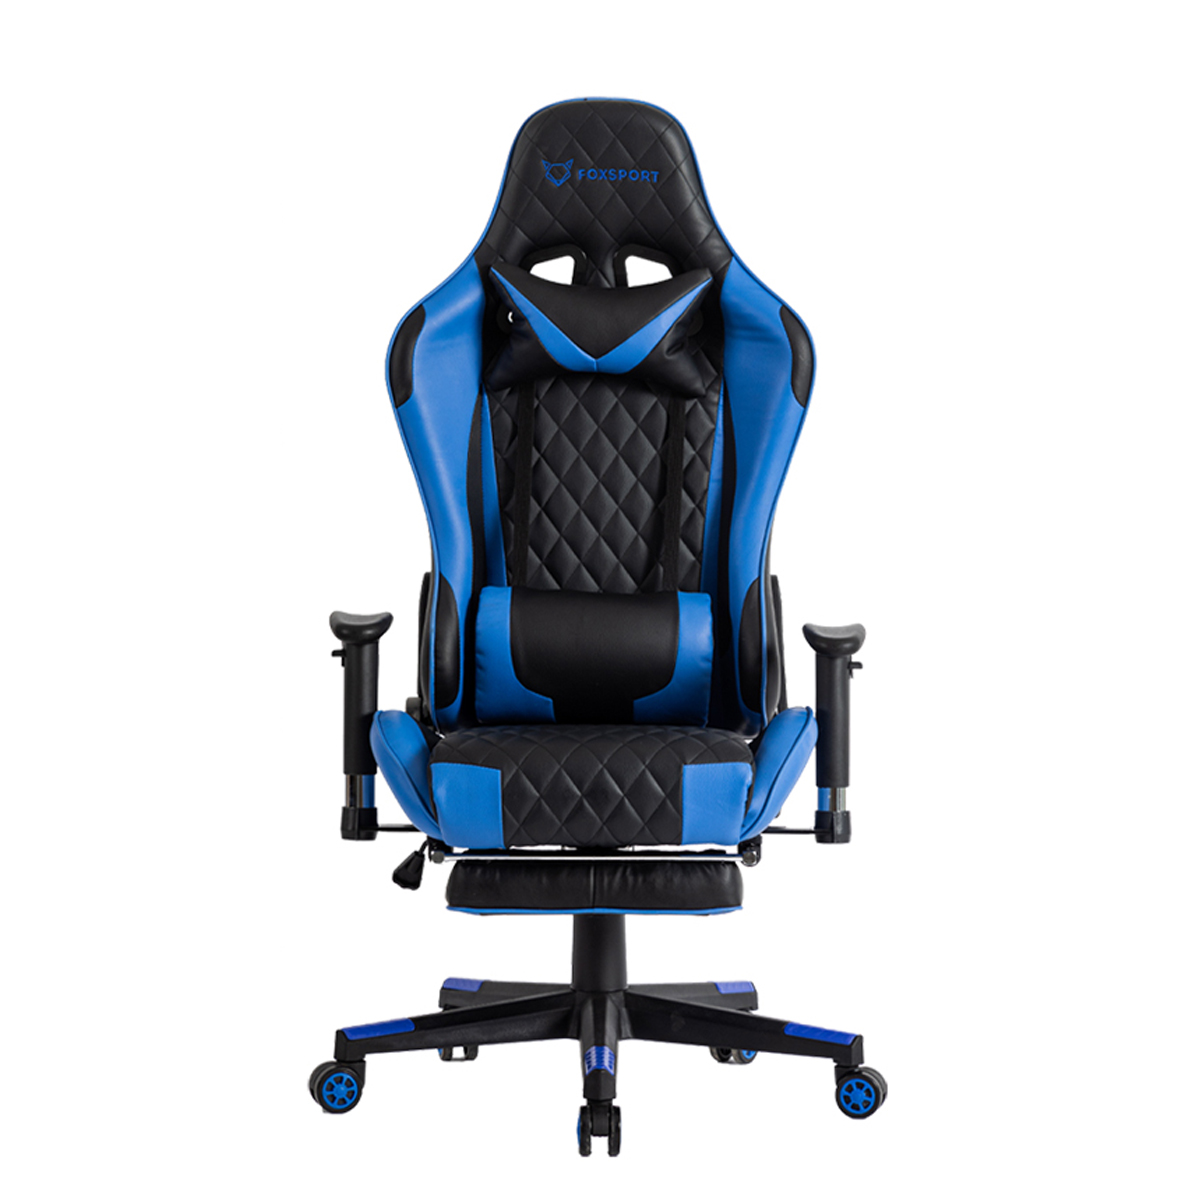 FOXSPORT mit Beinstütze blau Gaming-Stuhl, blau